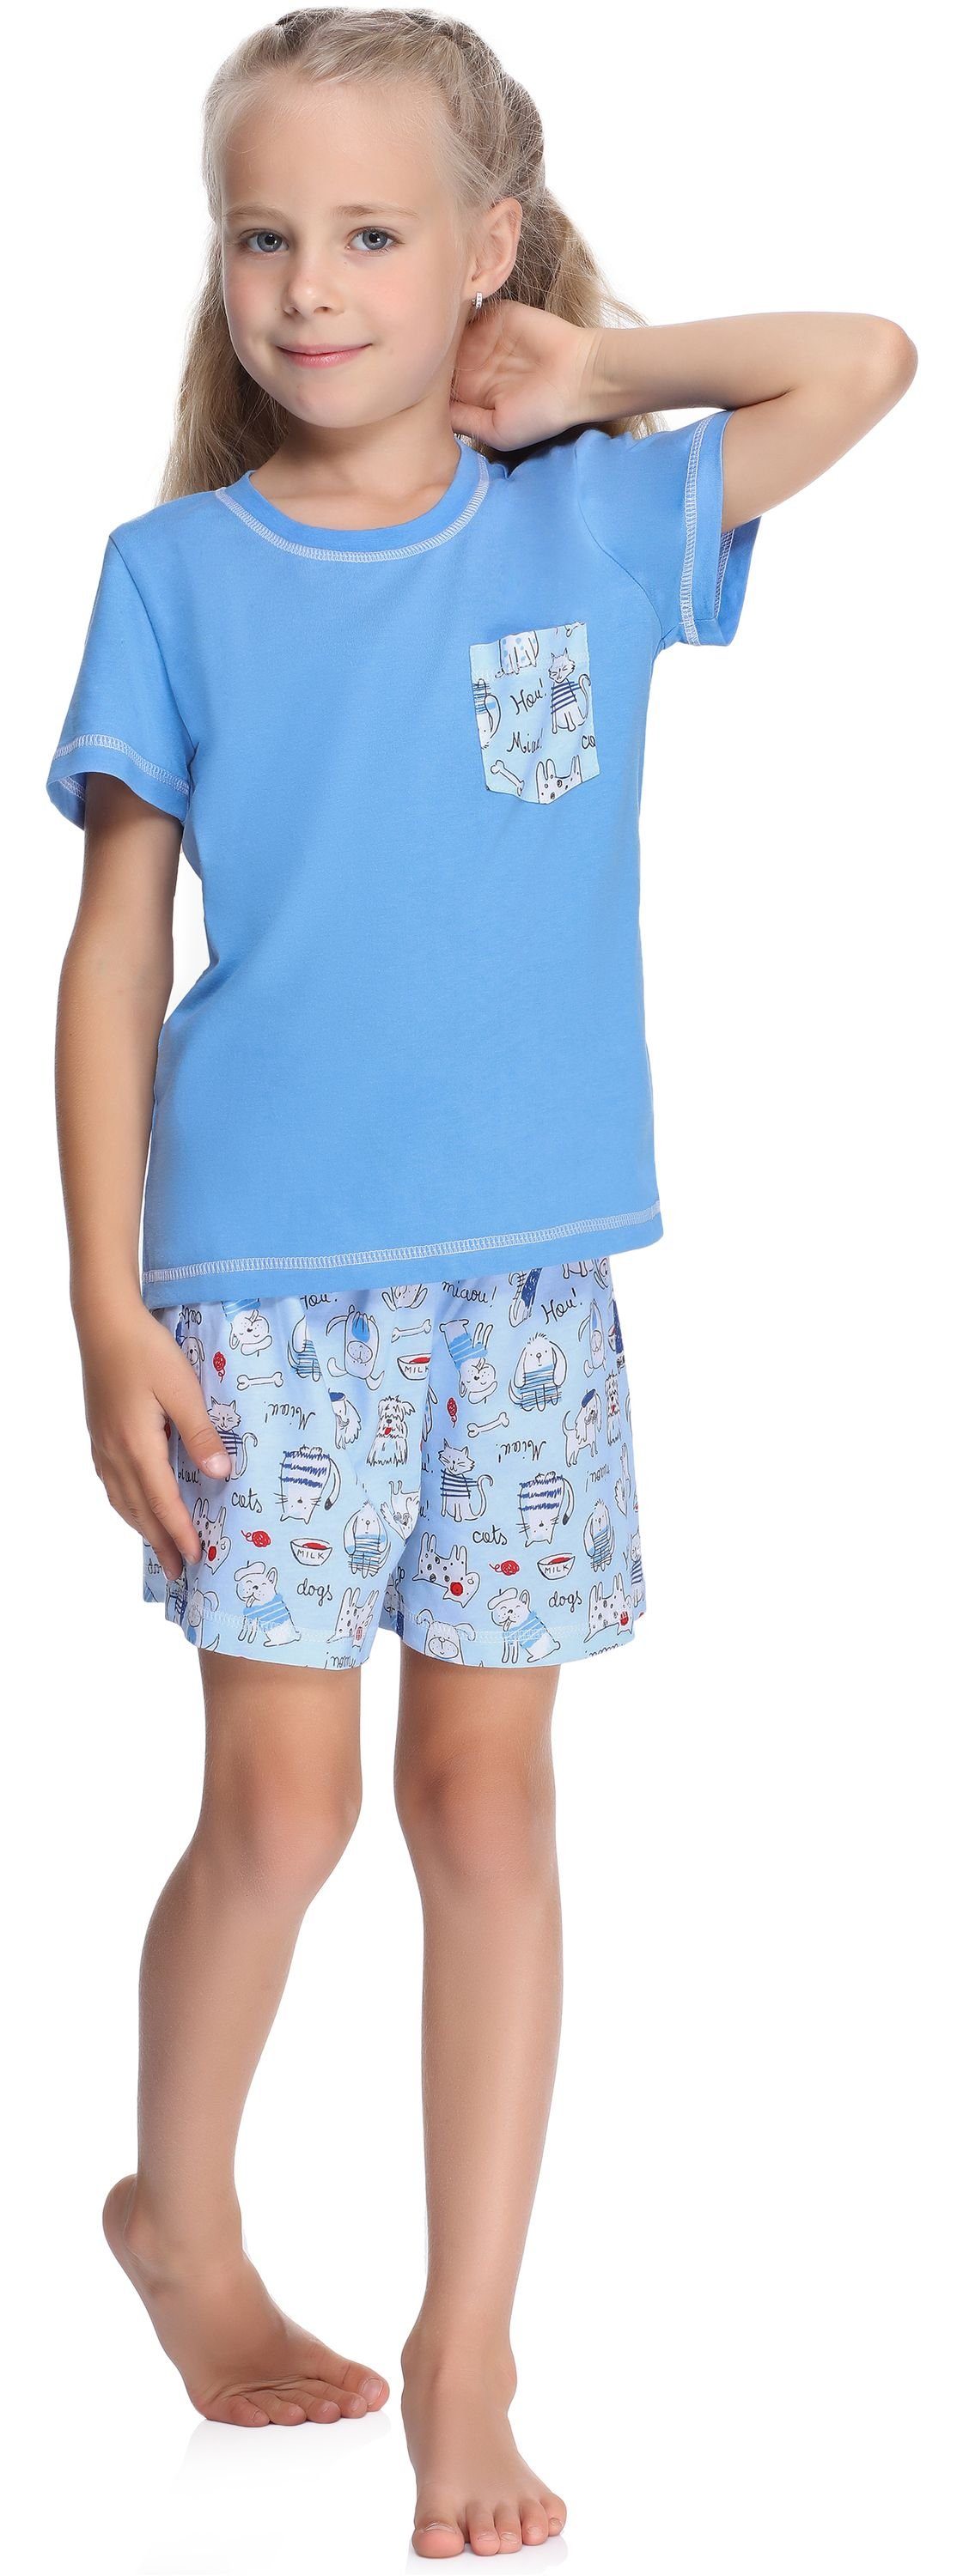 Blau/Hunde/Katze Kurz Mädchen aus Pyjama Style Schlafanzüge Baumwolle Set MS10-292 Merry Schlafanzug